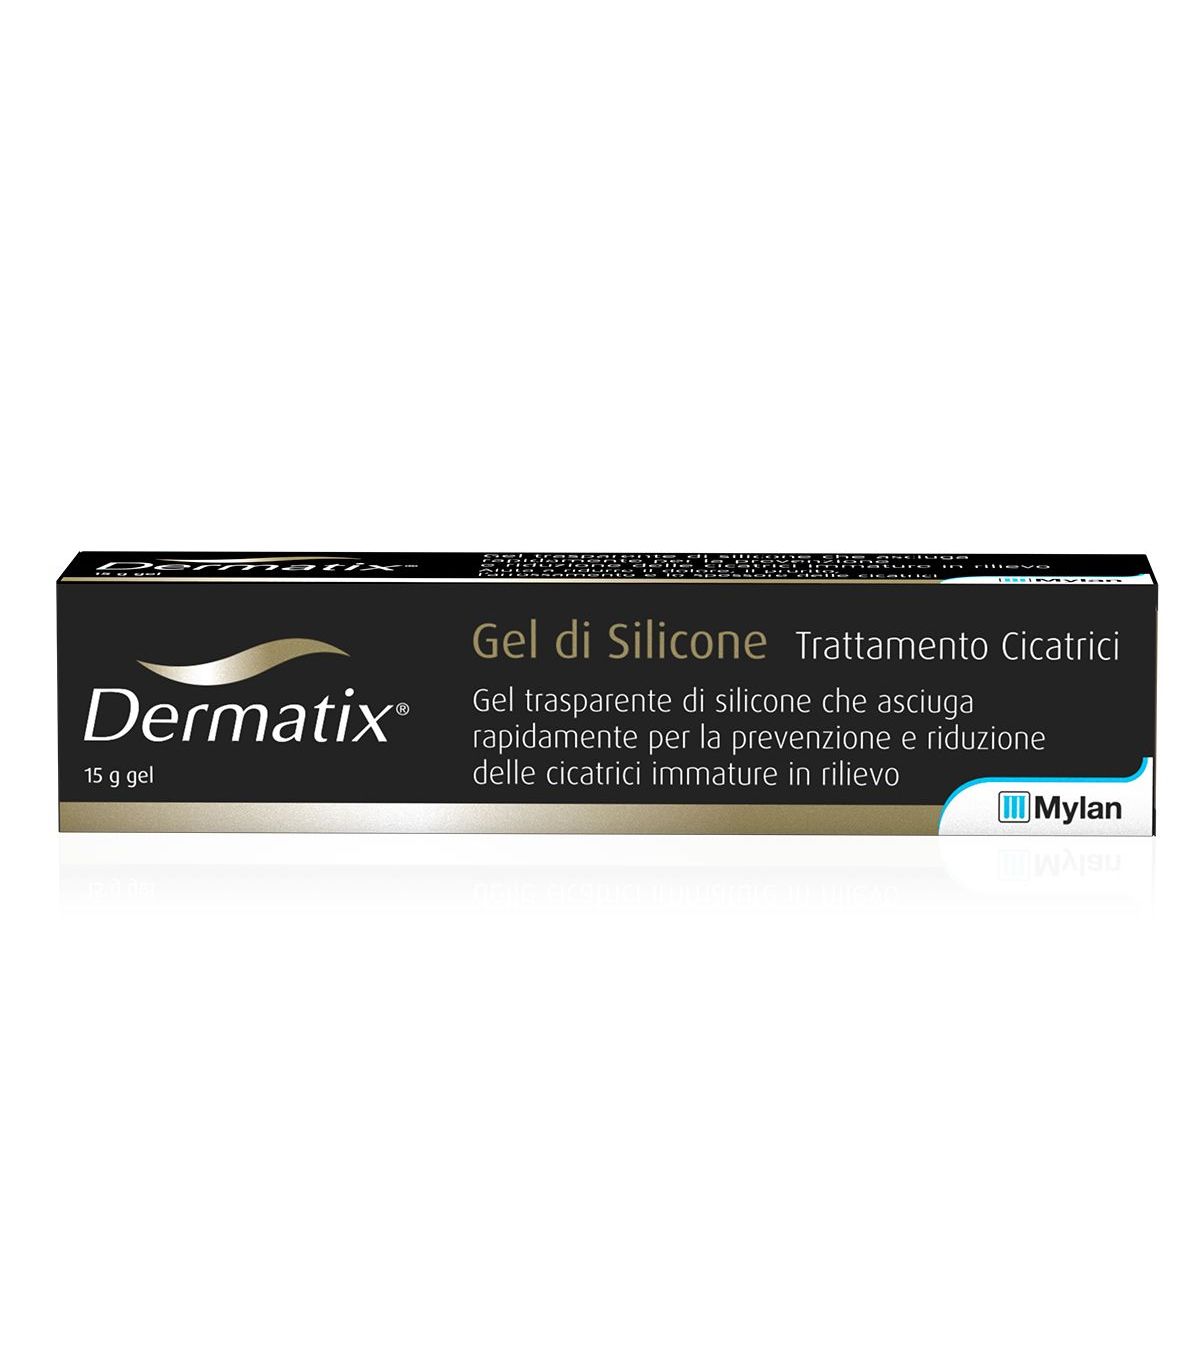 viatris italia srl dermatix - gel di silicone per il trattamento delle cicatrici - 15 g